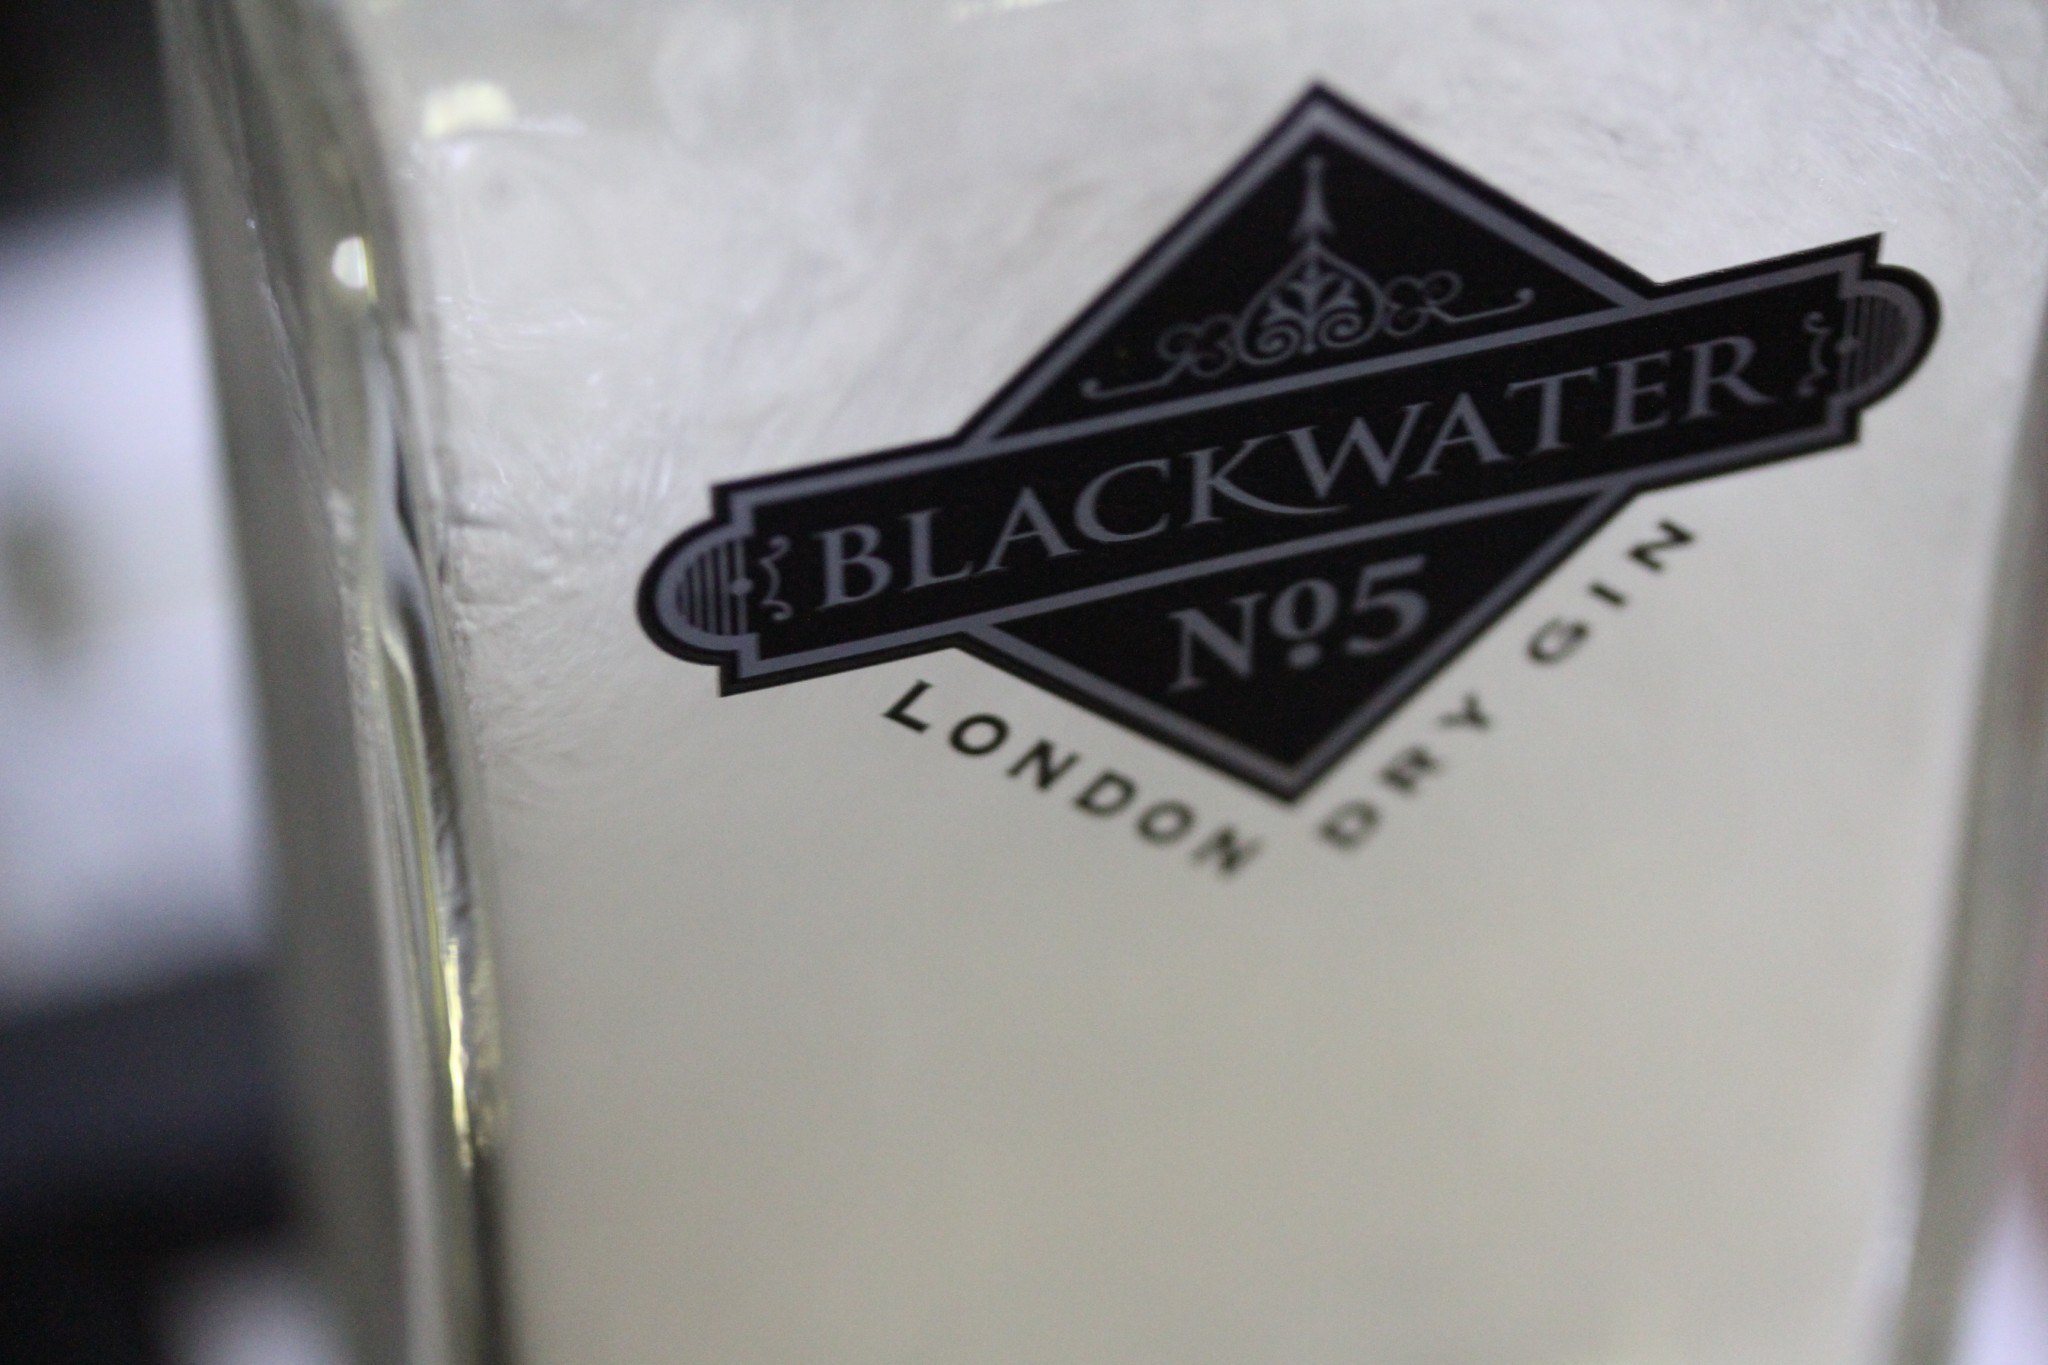 London dry gin | Blackwater No.5
